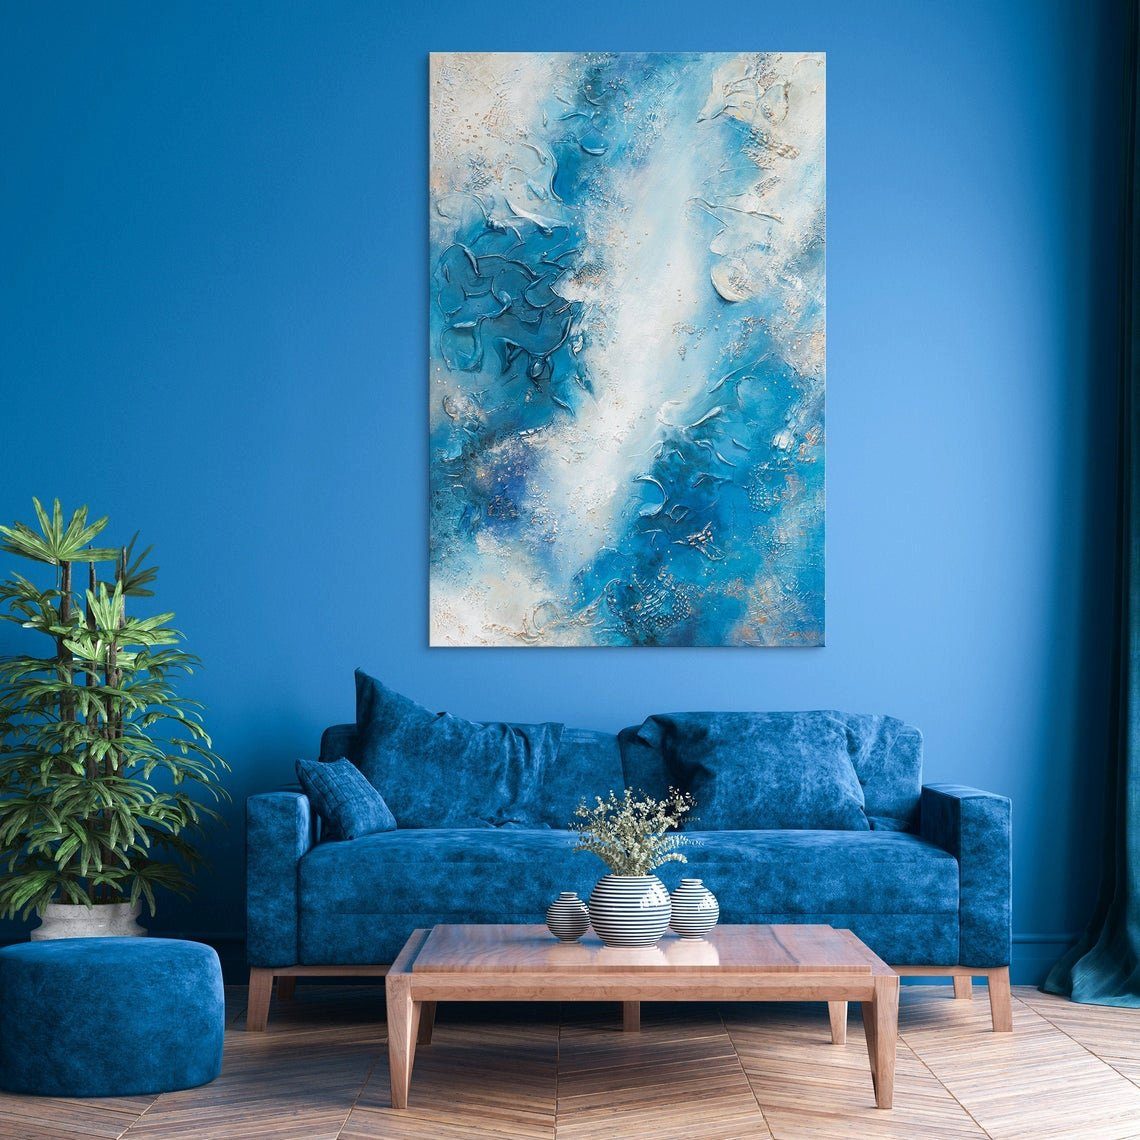 Leinwand in Vertikales Pazifik, Handgemalt Gemälde Abstraktion, Bild YS-Art Abstrakt Blau